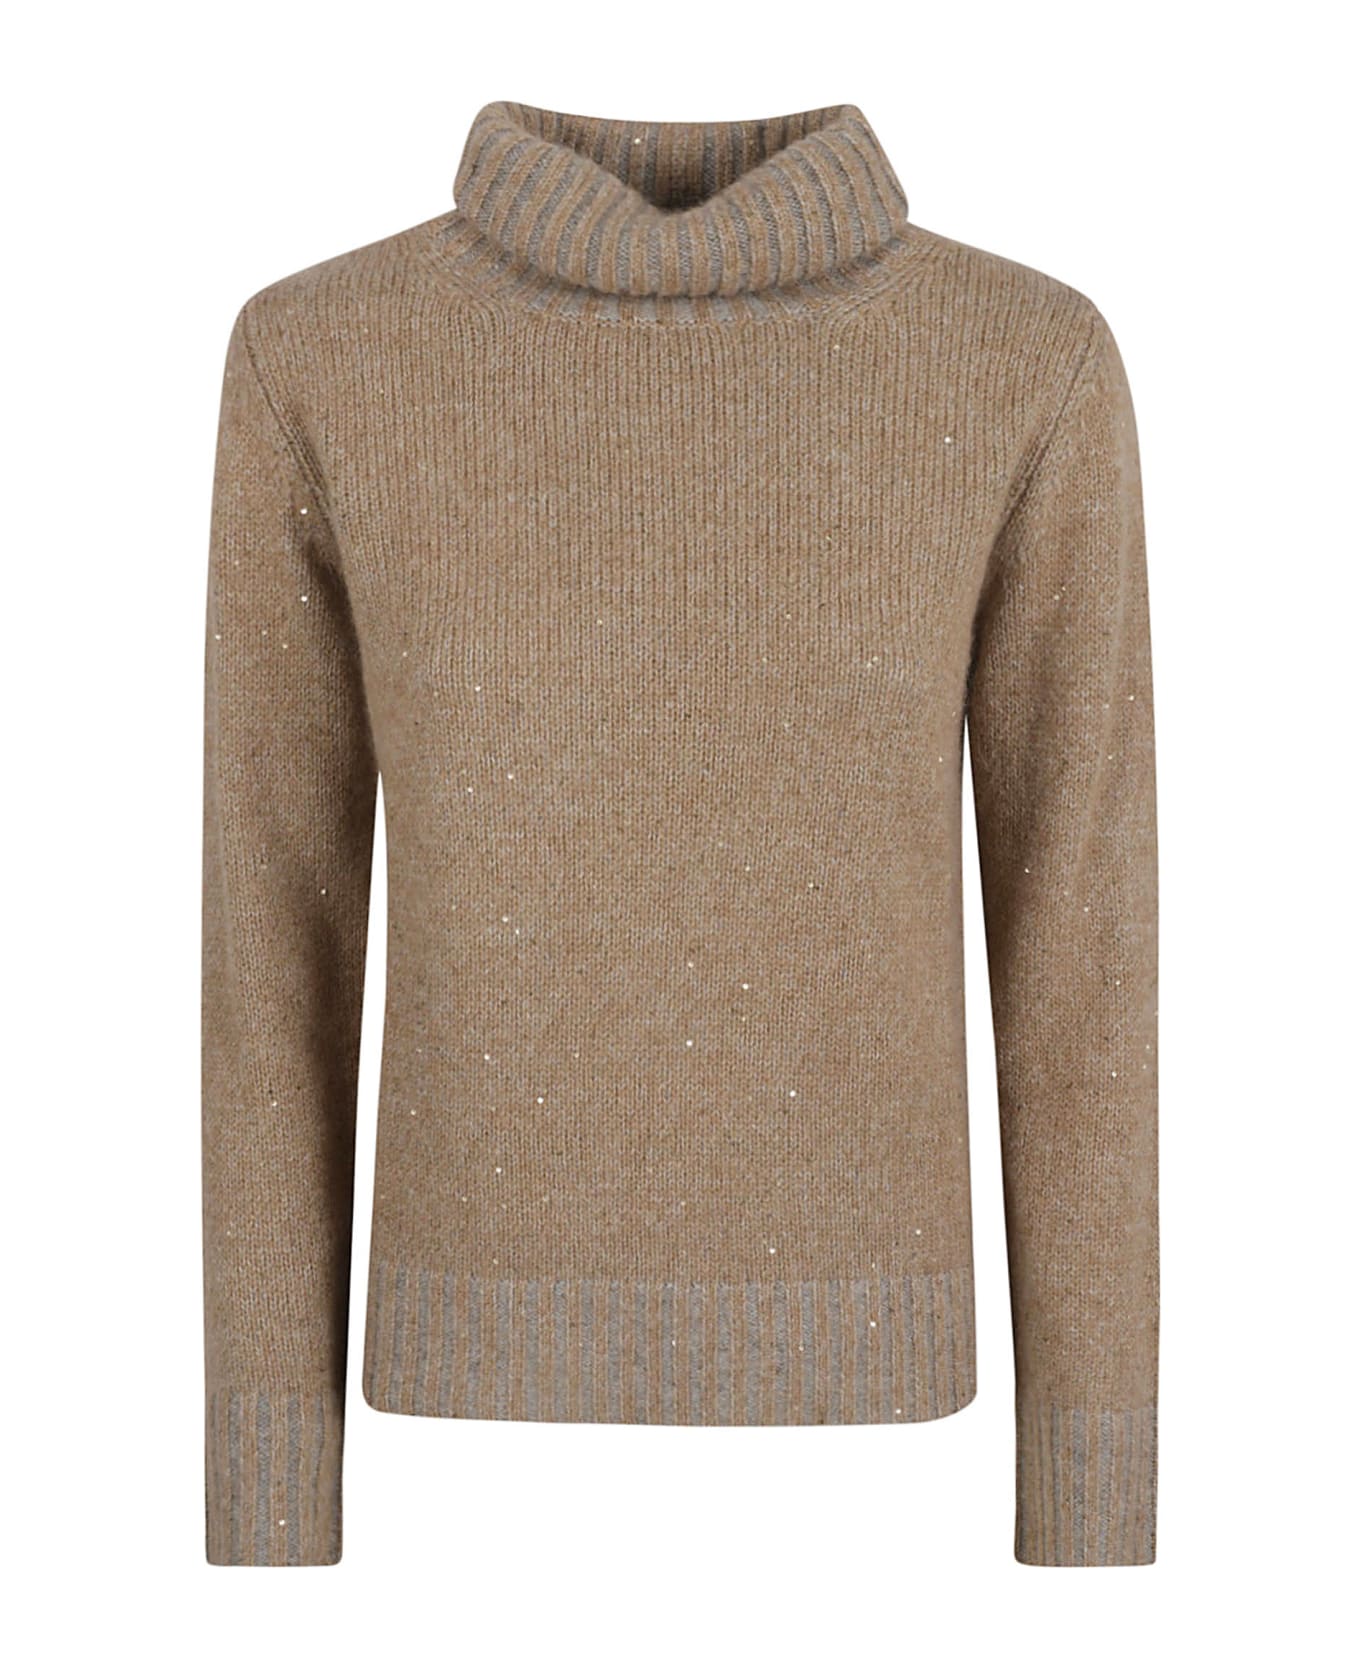 Fabiana Filippi Embellished Turtleneck Rib Sweater - Camel ニットウェア